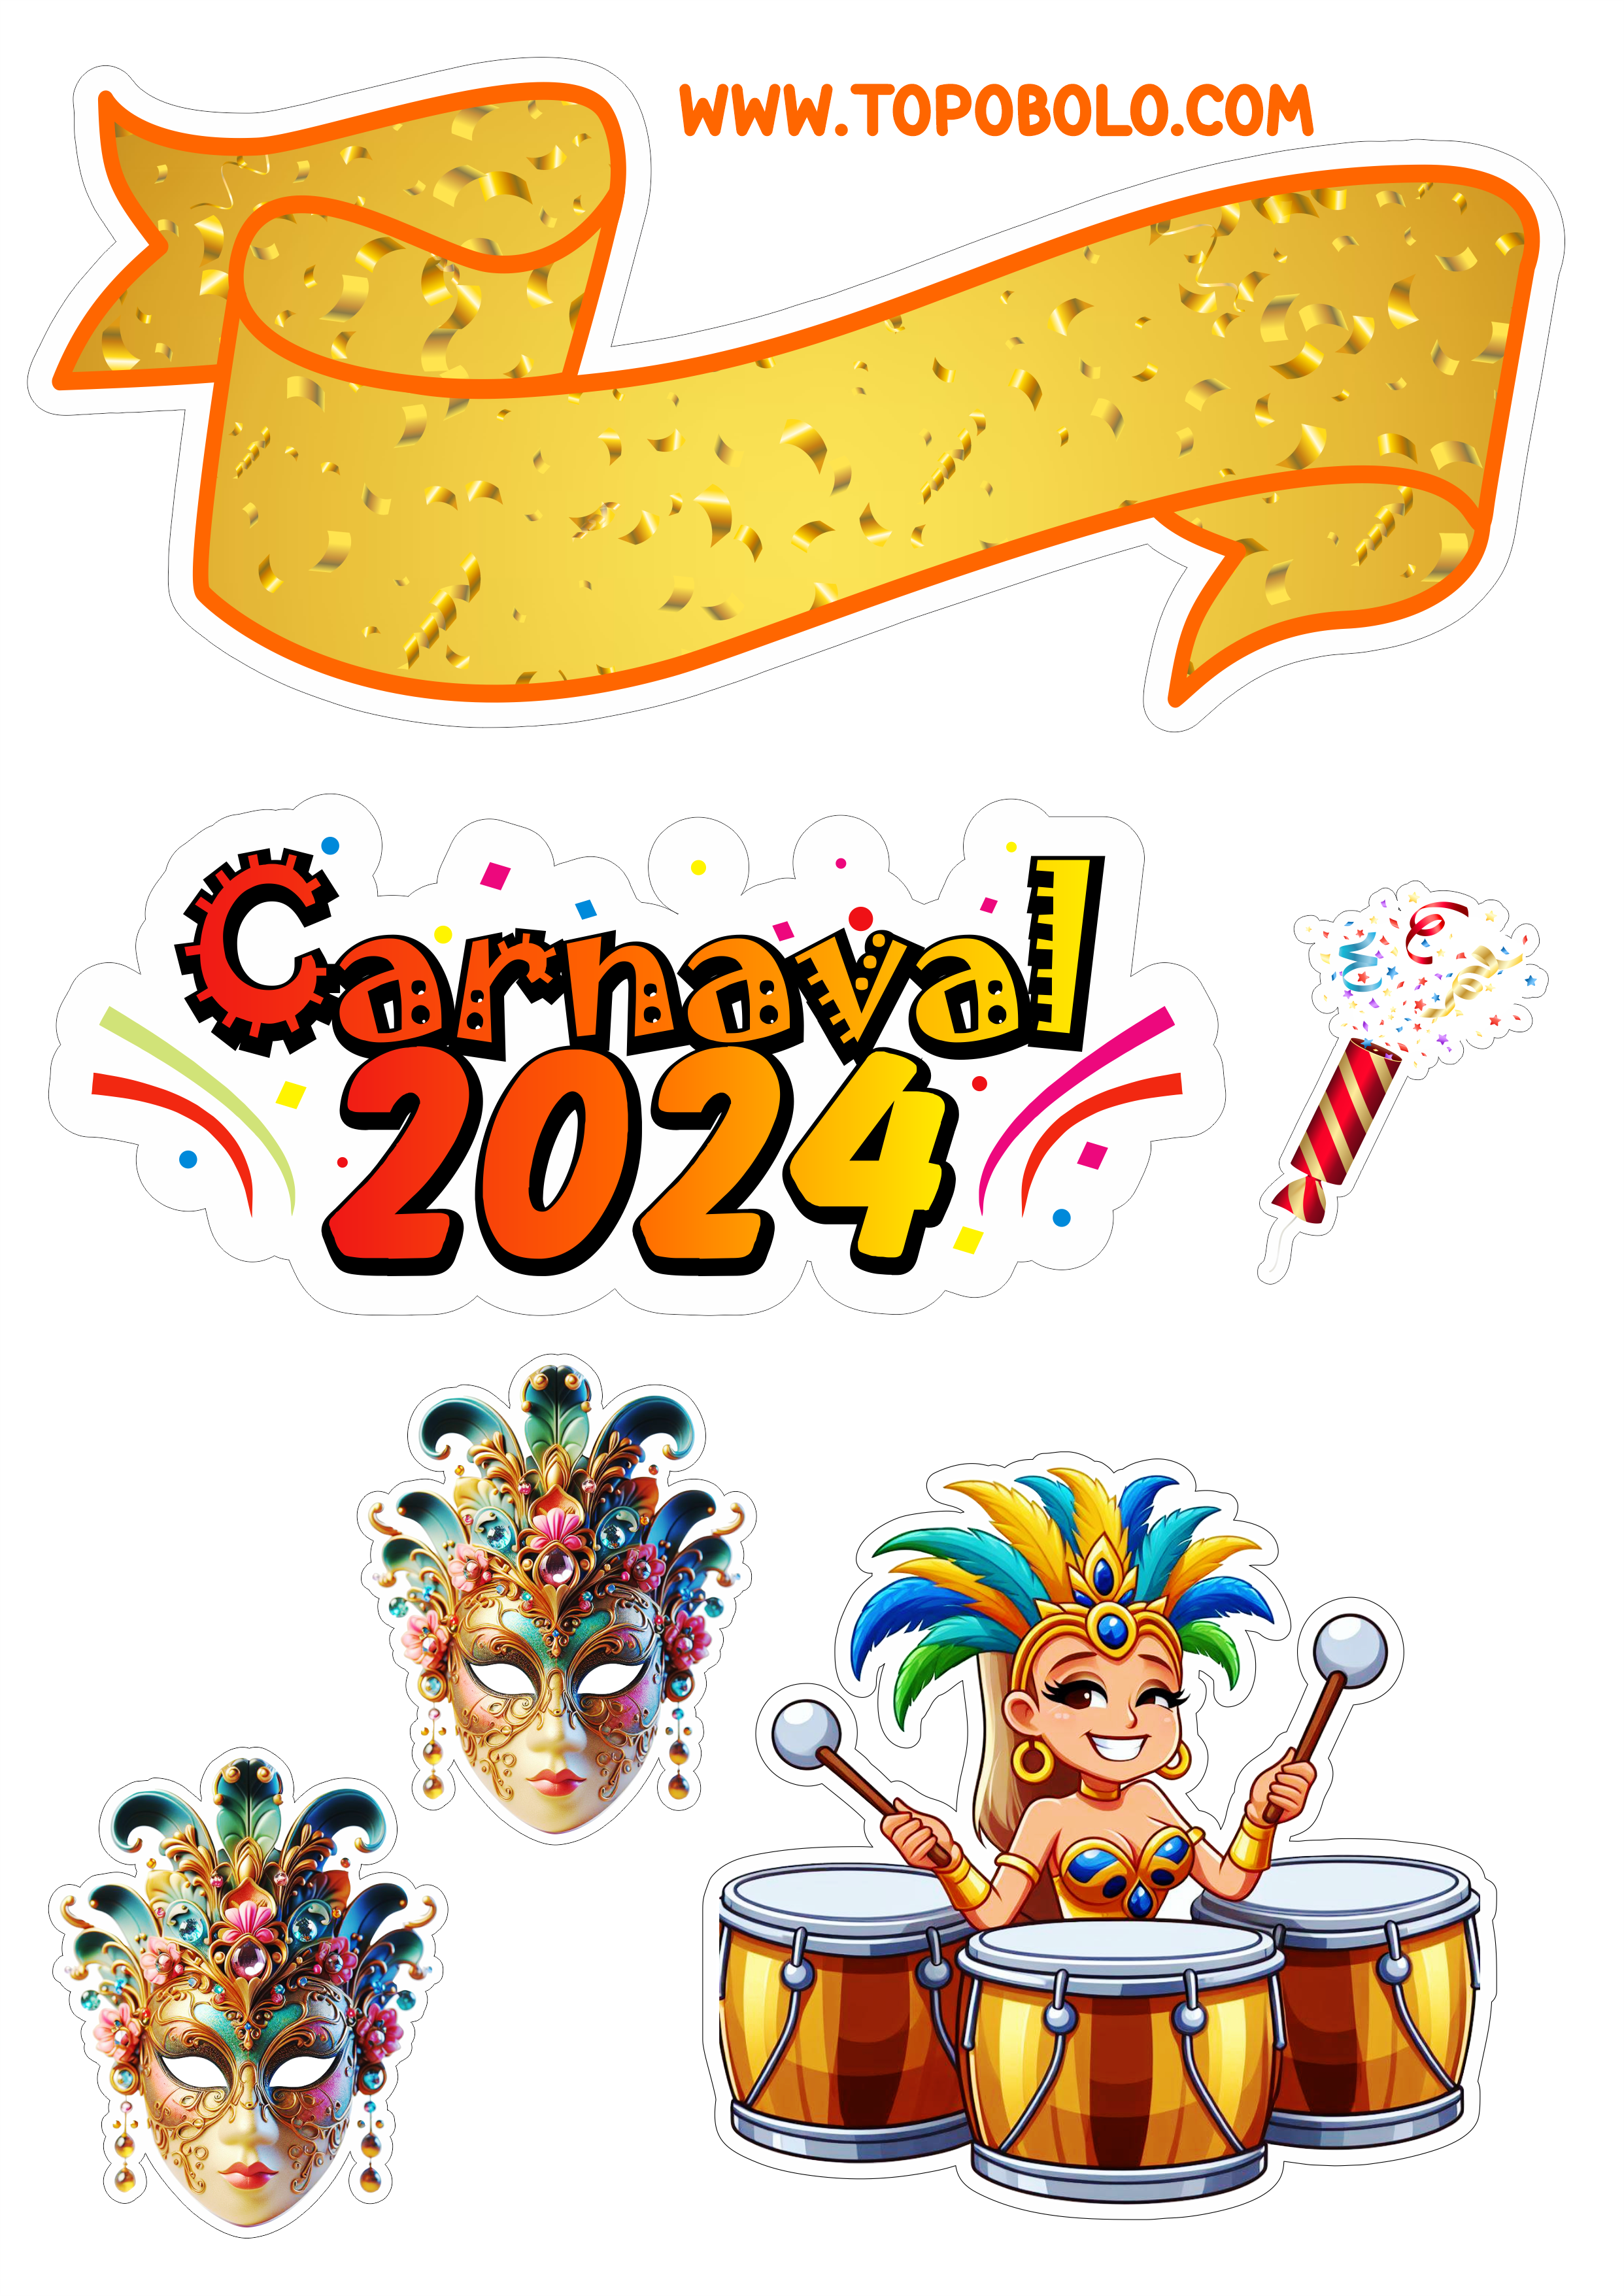 Topo de bolo carnaval 2024 decoração de aniversário png